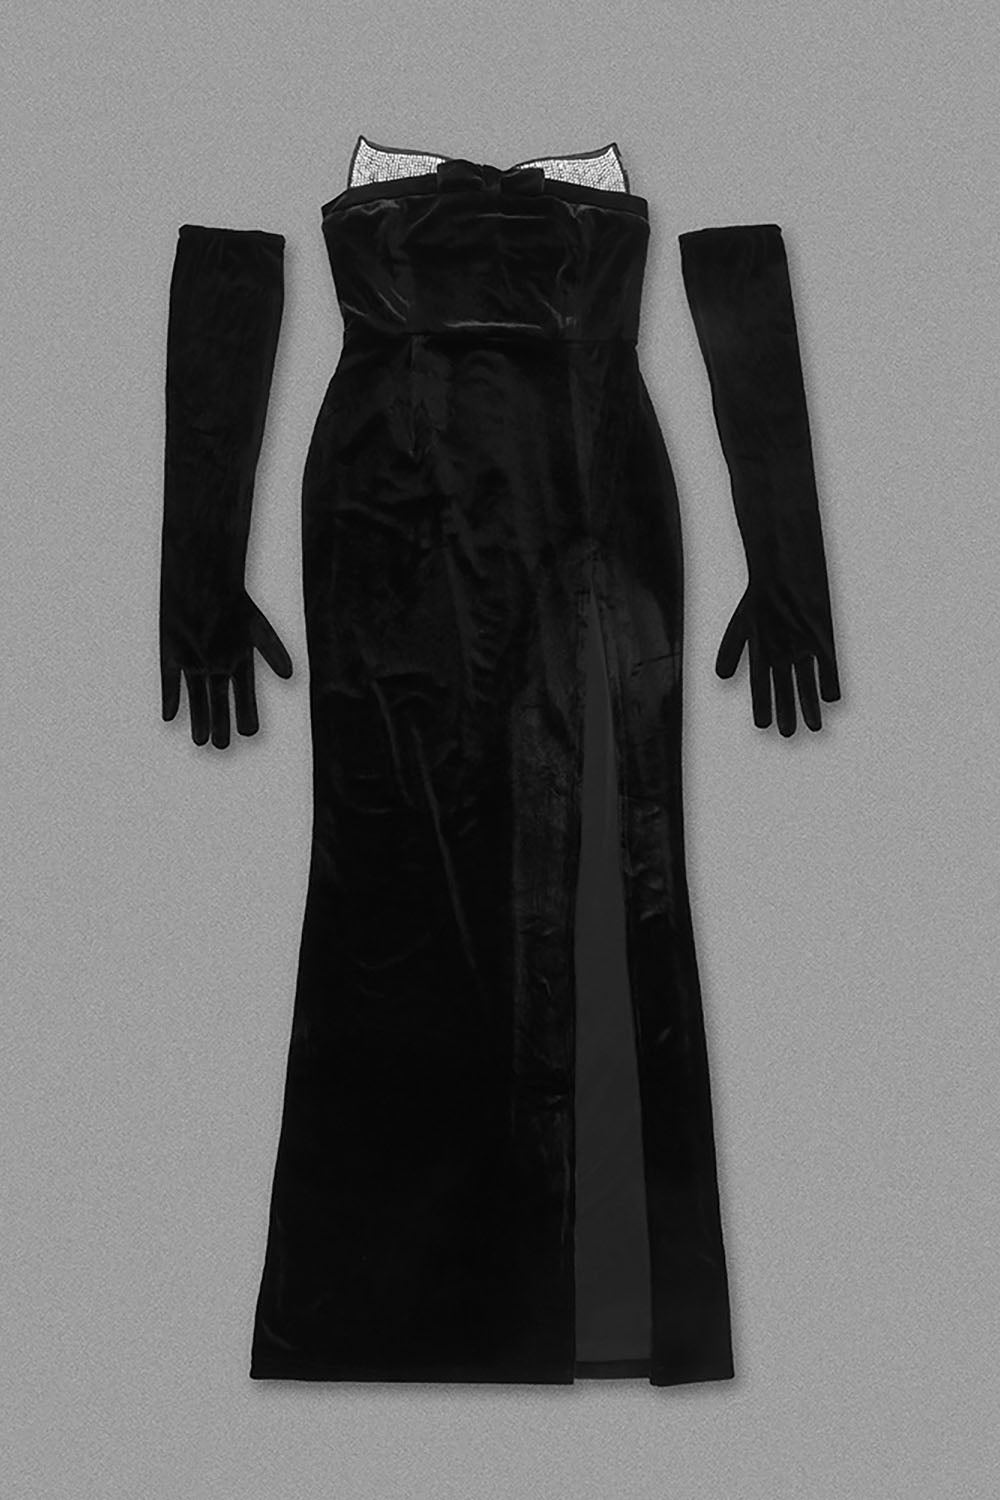 Strapless Rhinestone Velvet Noire Seduction Long Dress